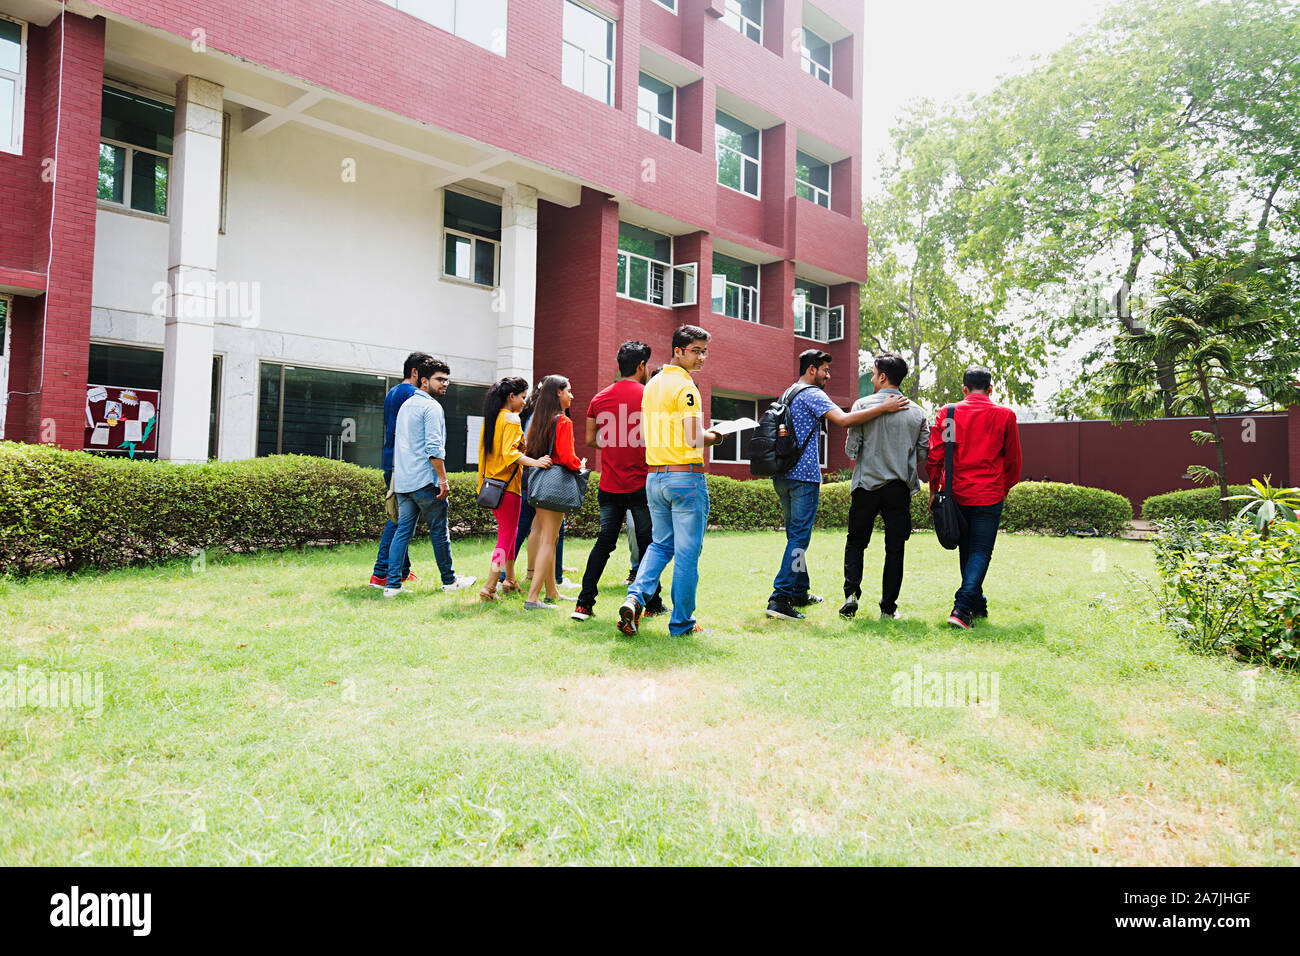 Groupe de jeunes garçons et filles du Collège Walking-Together In-Outside Carnet d'amis avec Campus University Building Banque D'Images